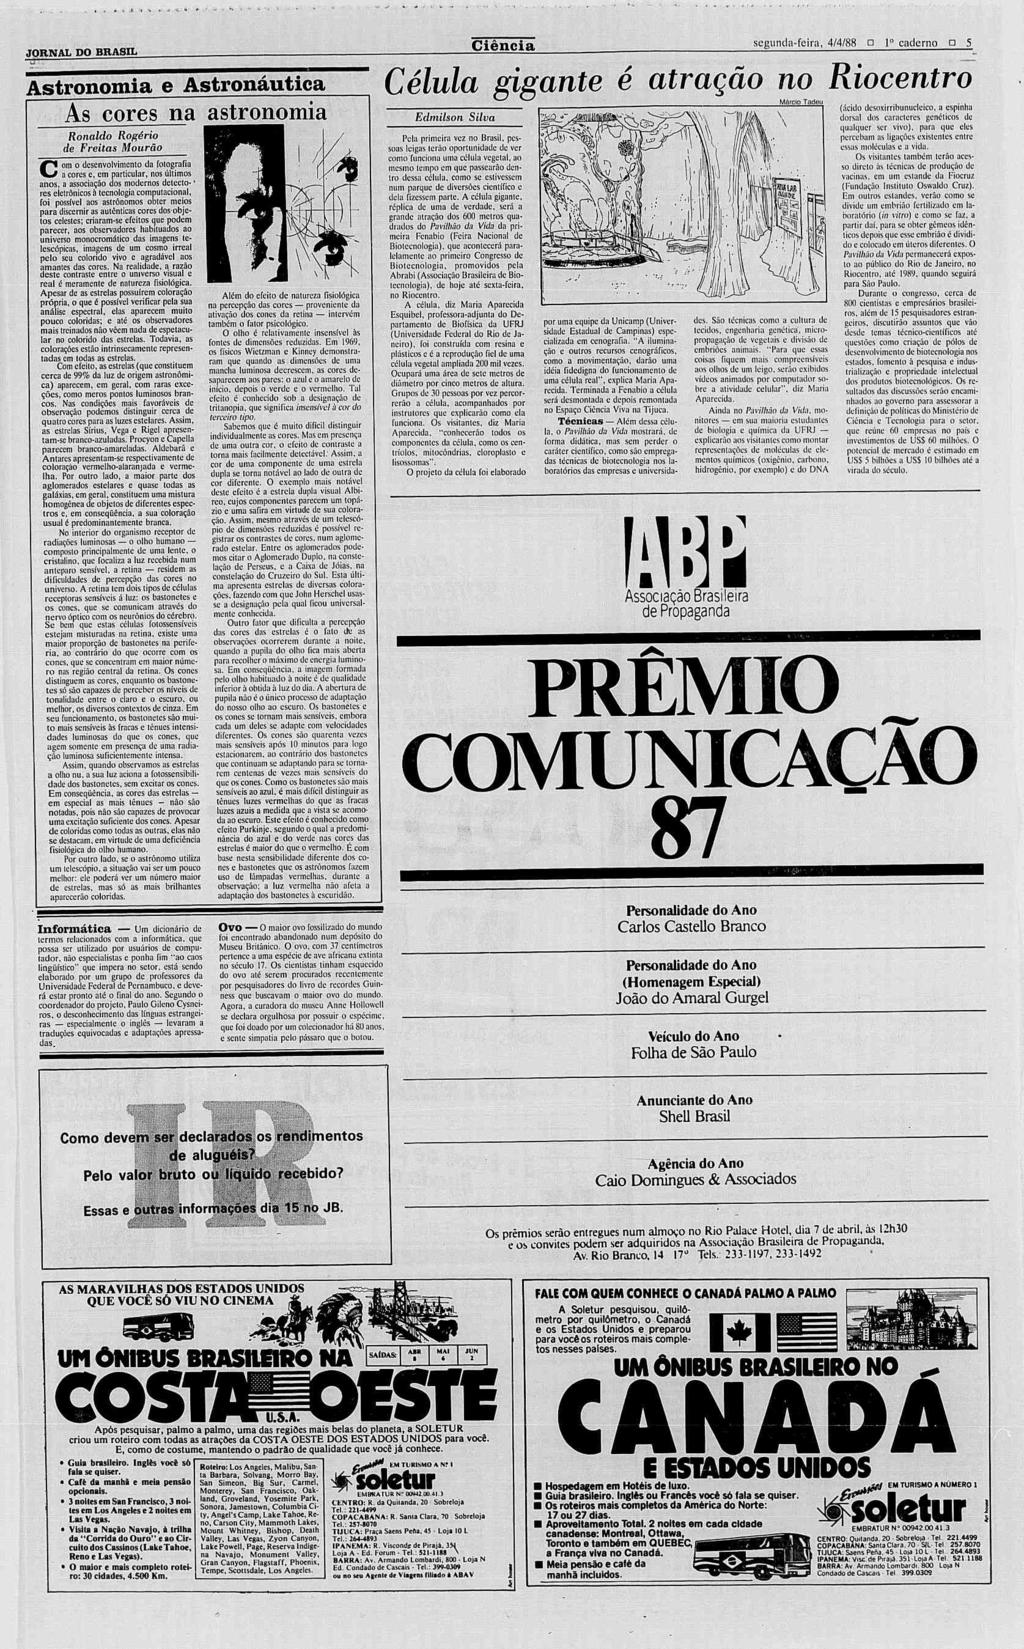 Joginging Boob Video - JORNAL DO BRASIL S A 1908 Rio de Janeiro Segunda-feira, 4 de abril ...